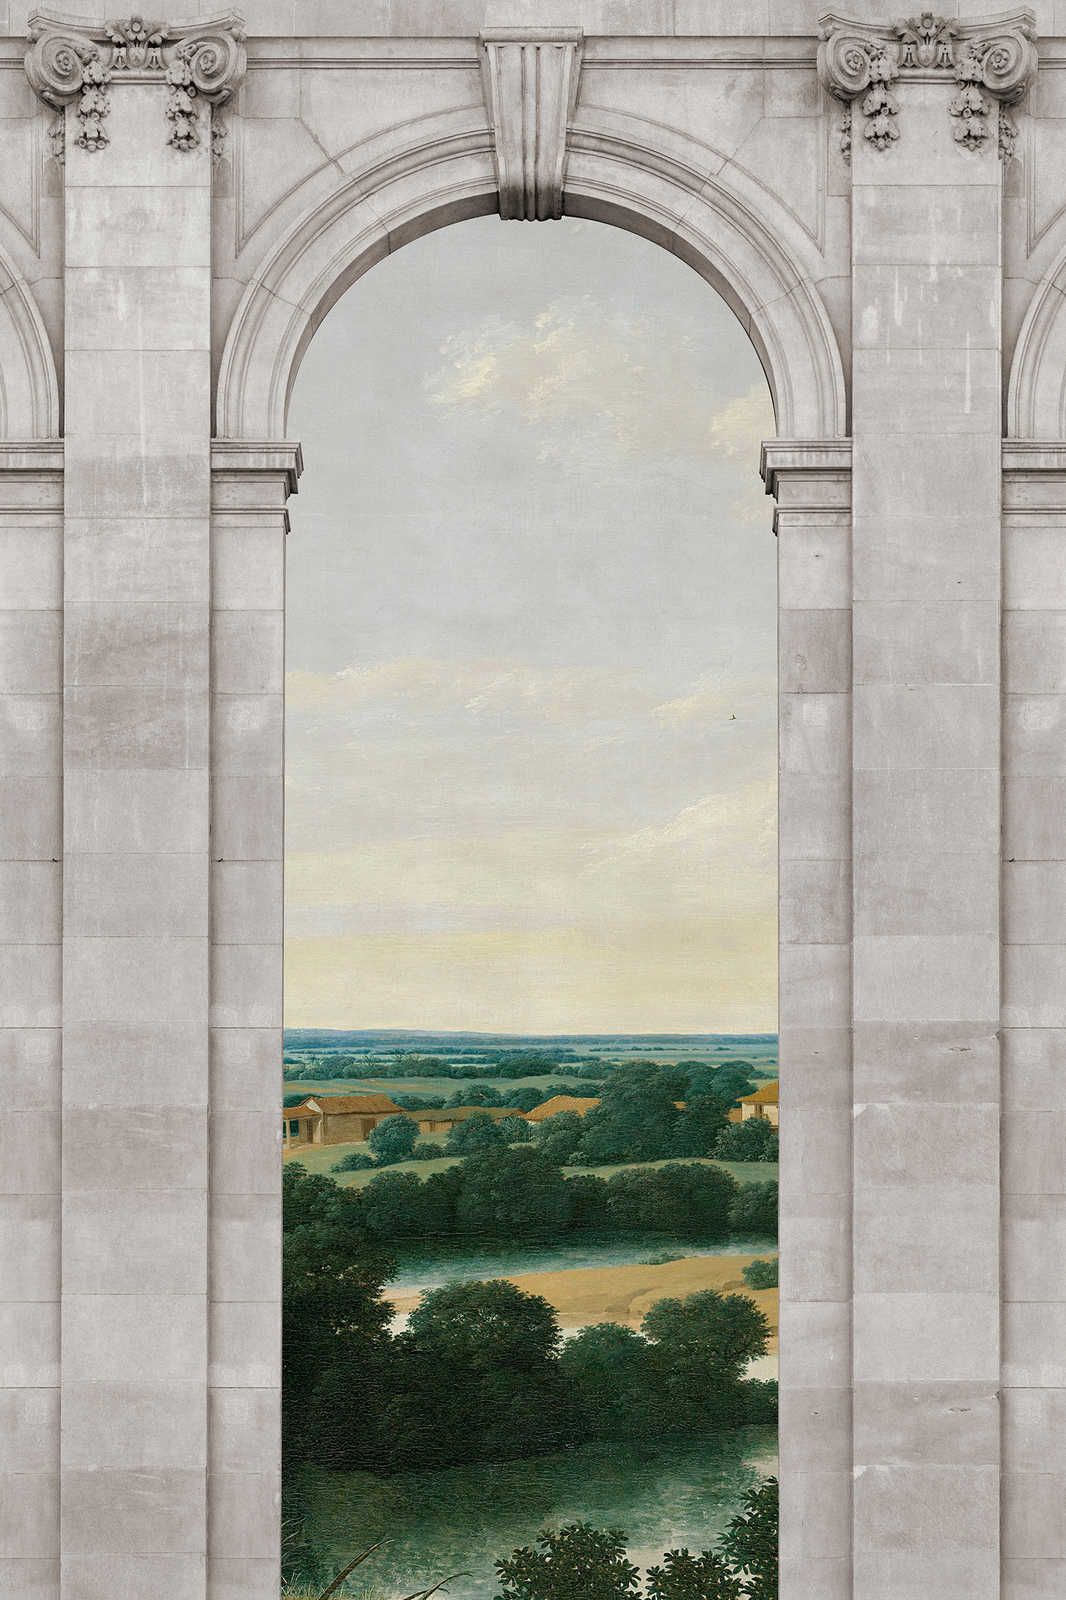             Castello 2 - Raam Canvas Schilderij Boog & Uitzicht Landschap - 1.20 m x 0.80 m
        